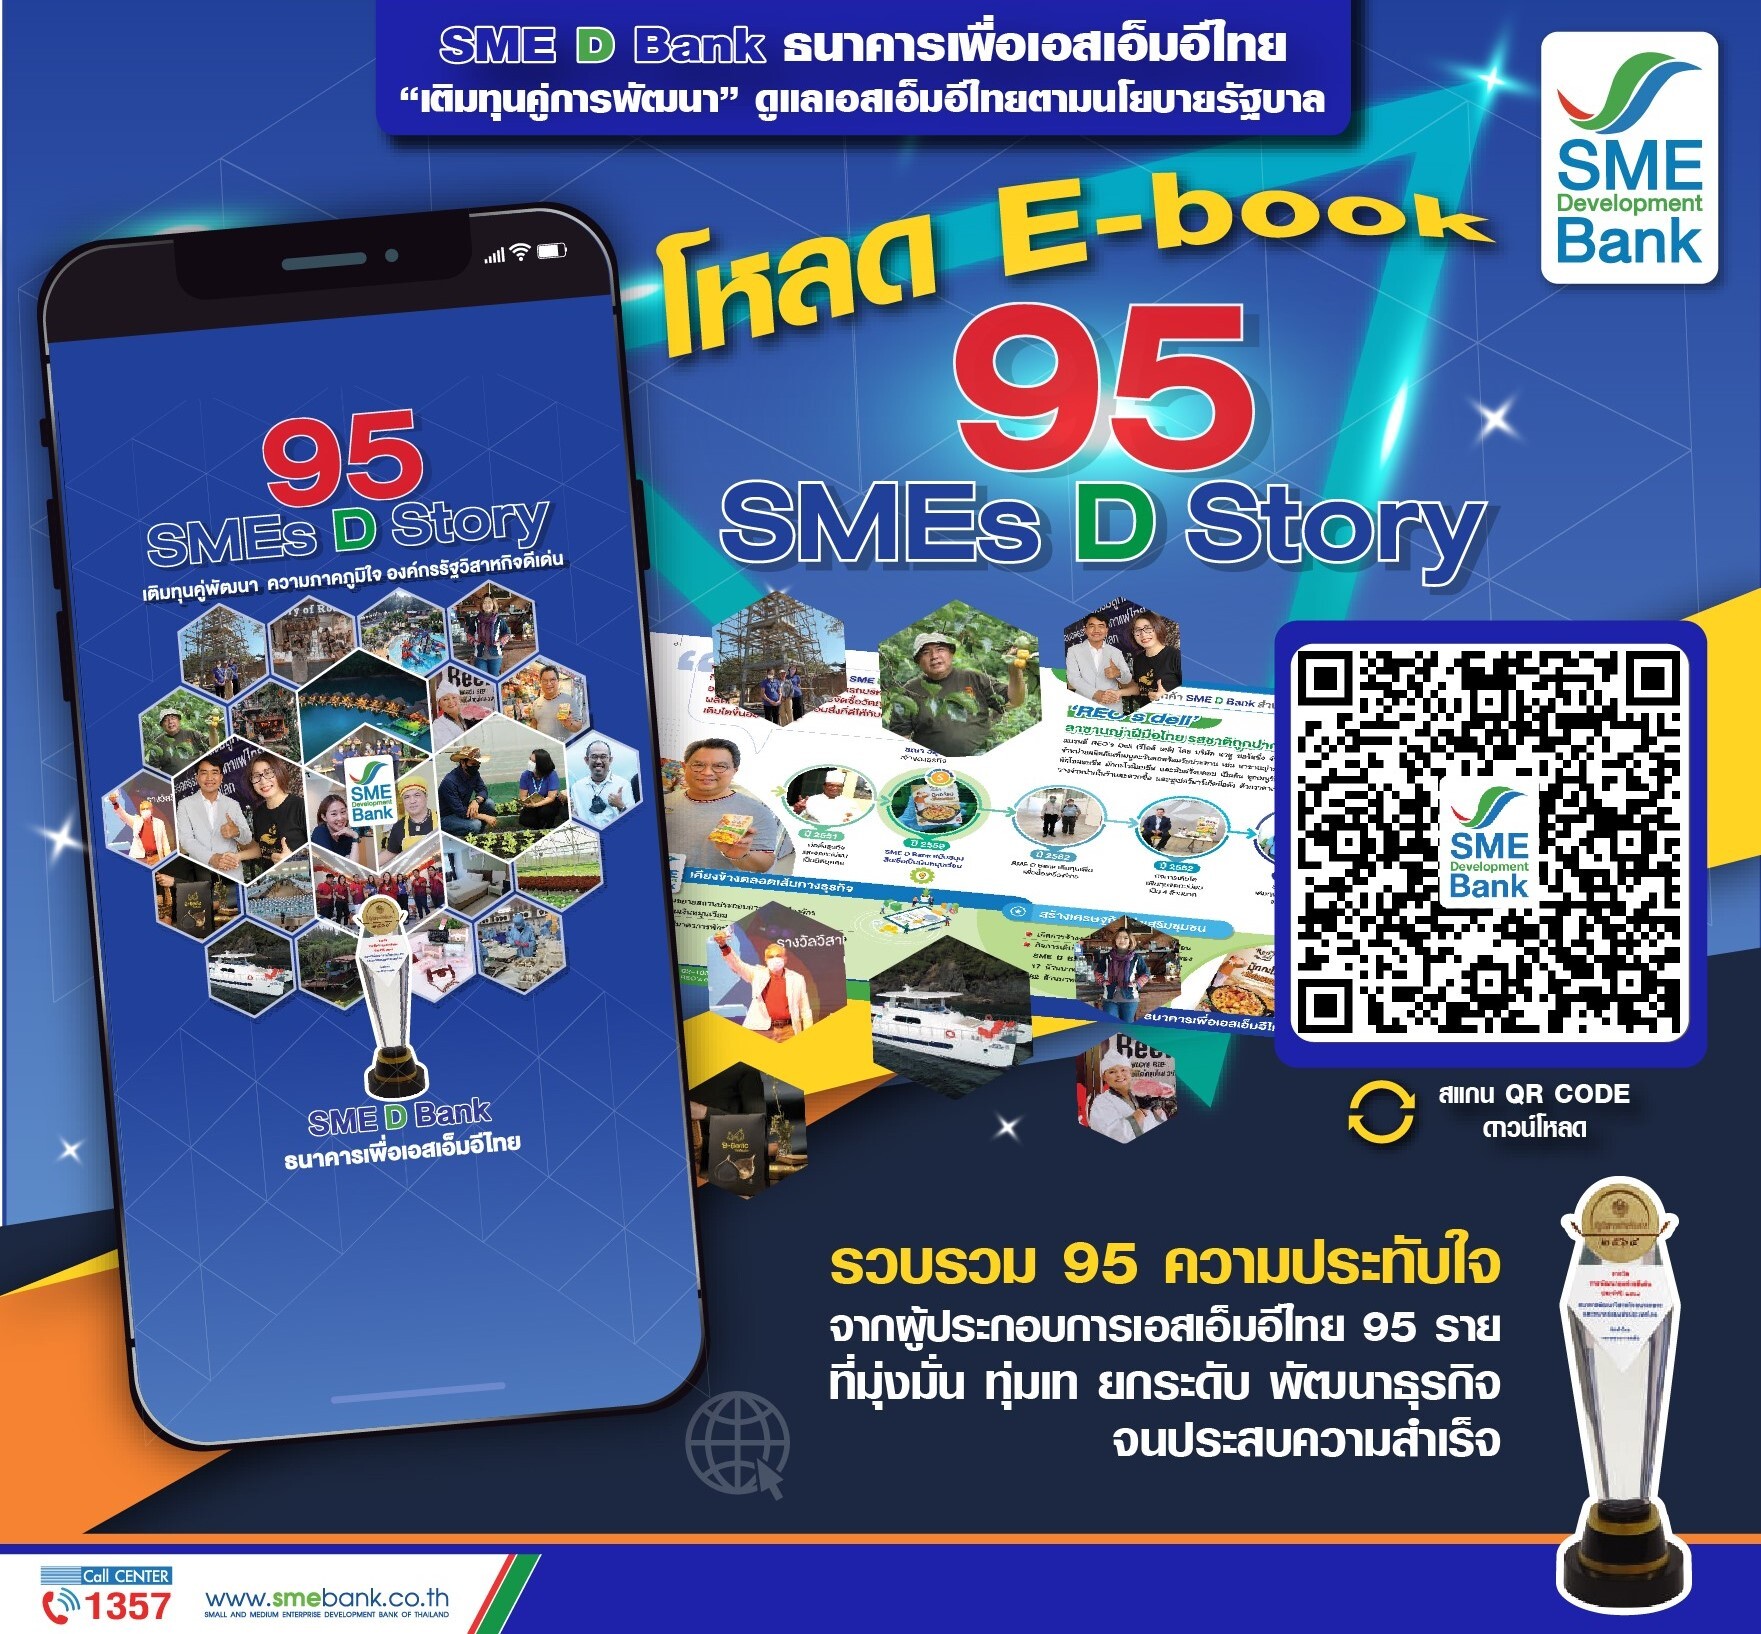 SME D Bank จัดทำ E-book บันทึก 20 ปี เคียงคู่ดูแลเอสเอ็มอีไทย ผ่าน "95 สุดยอดผู้ประกอบการ" ช่วยปลุกไฟใช้เป็นต้นแบบพาสู่ความสำเร็จ